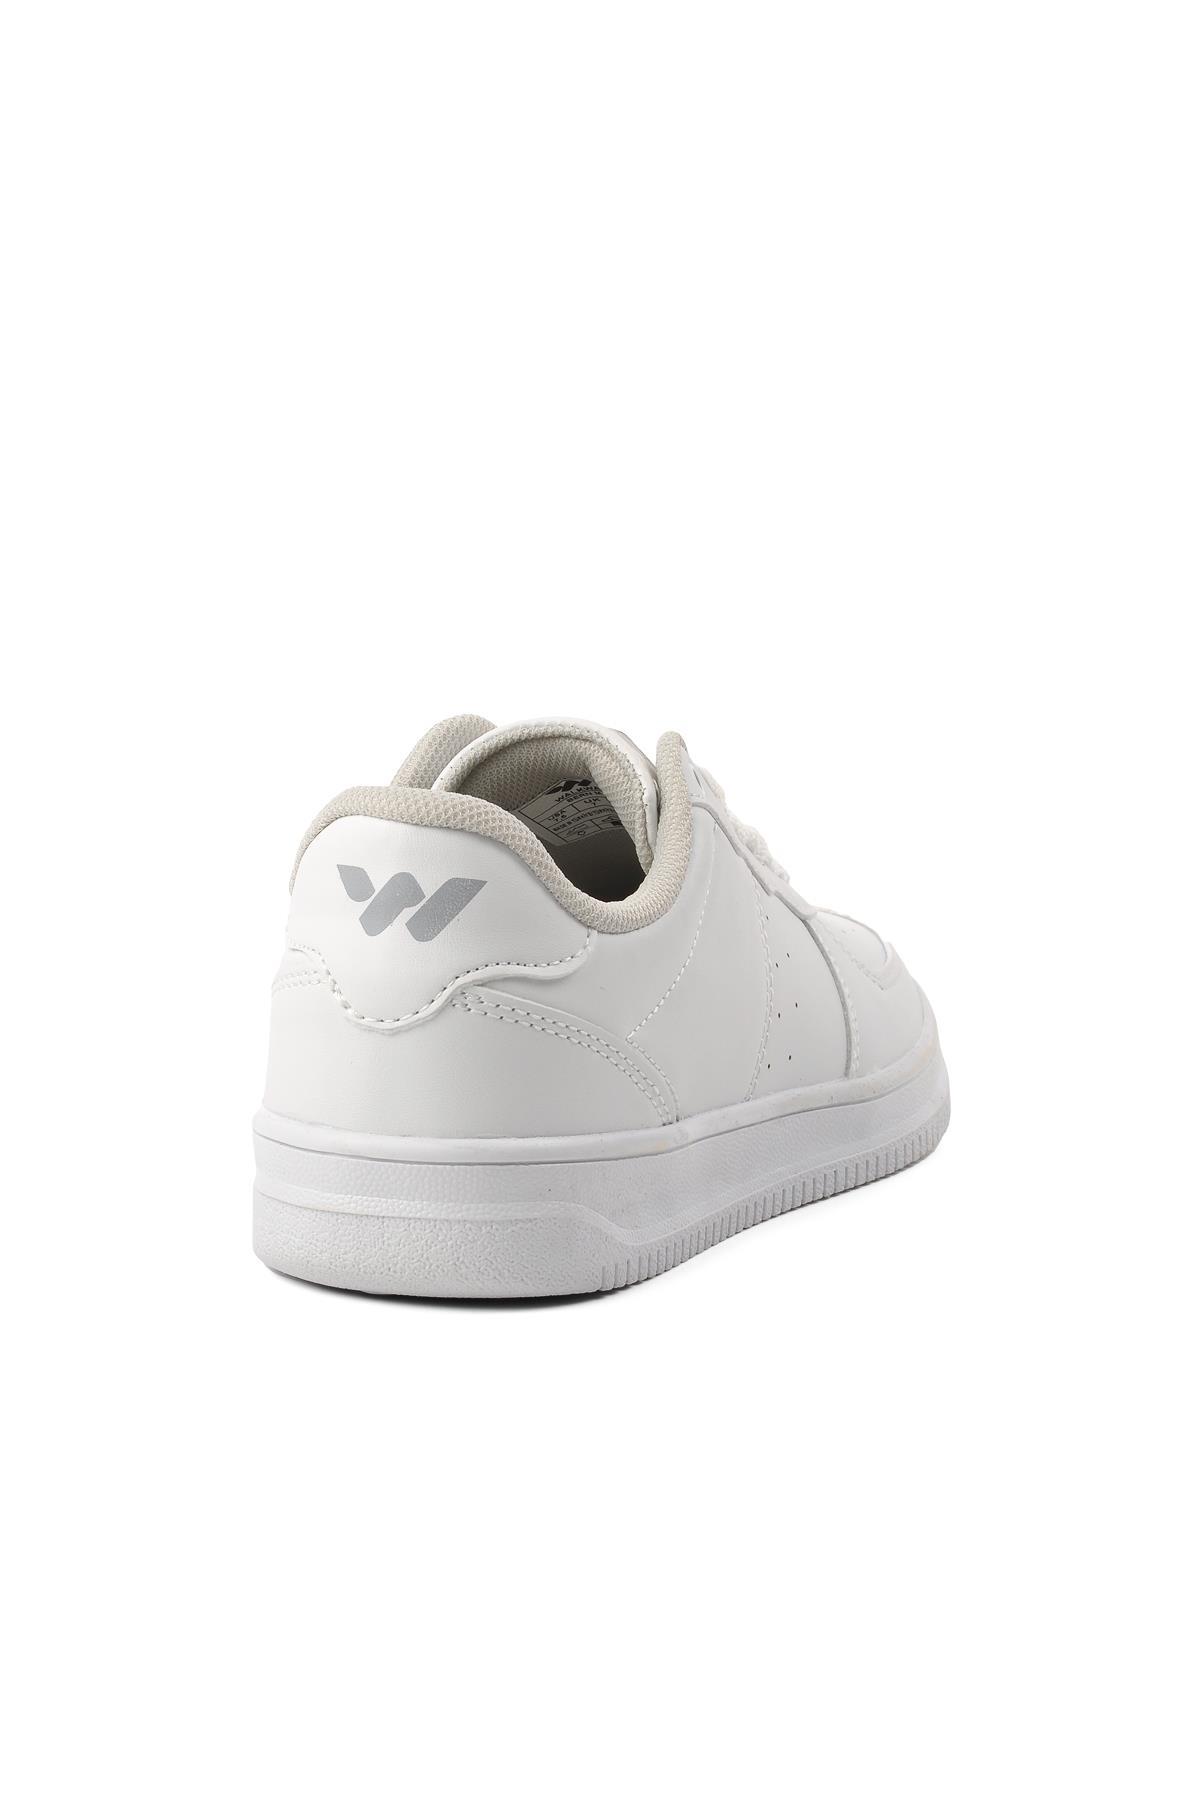 Walkway Bern Beyaz Tek Renk Erkek Spor Ayakkabı - Ayakmod